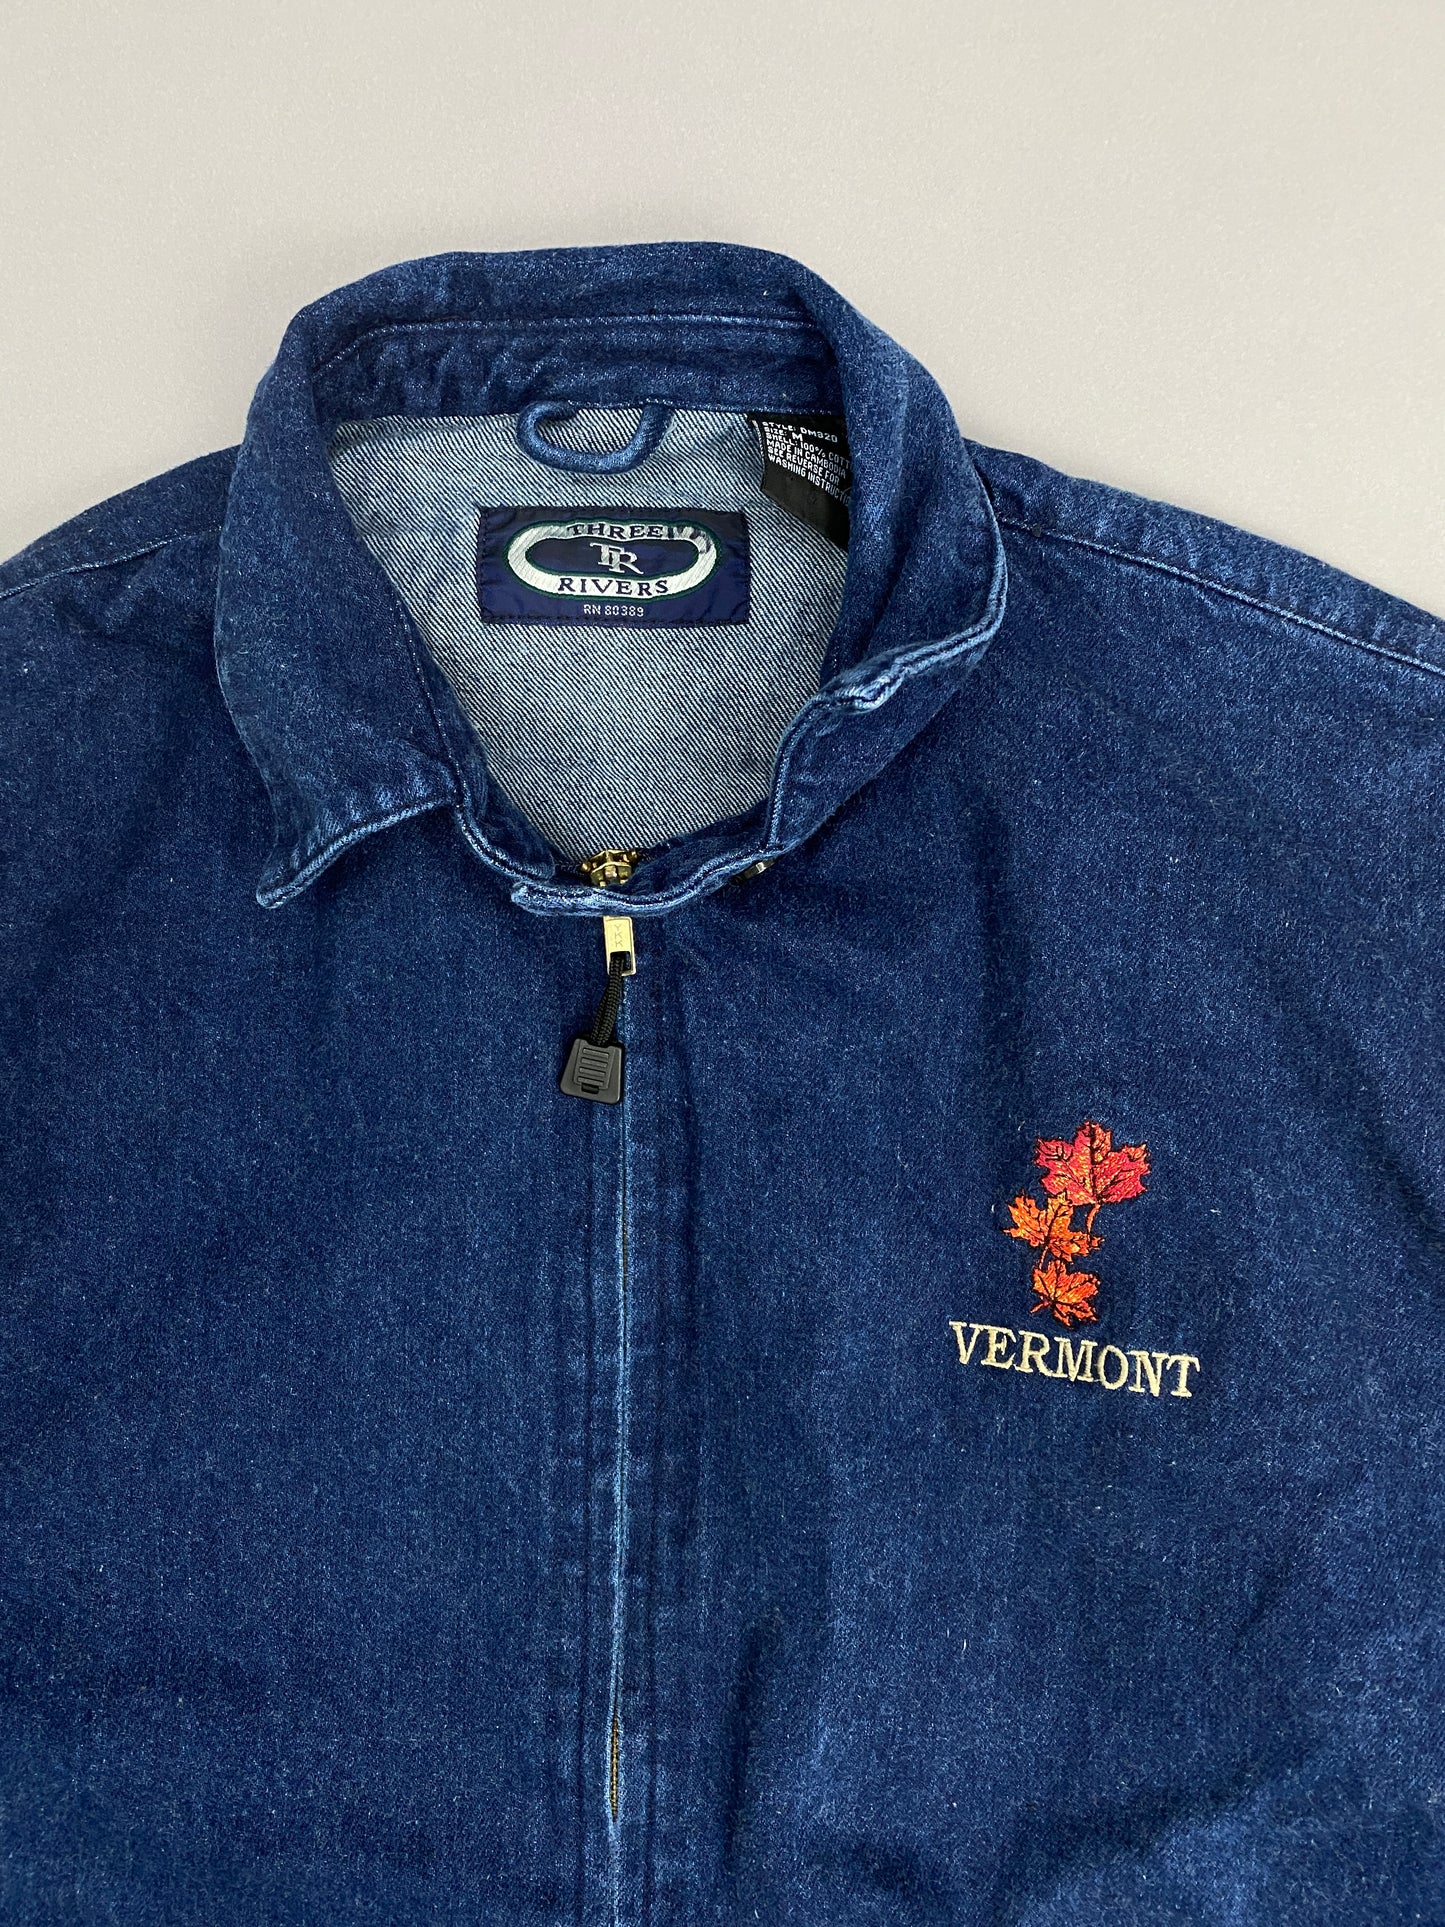 Vermont Vintage Denim Jacket